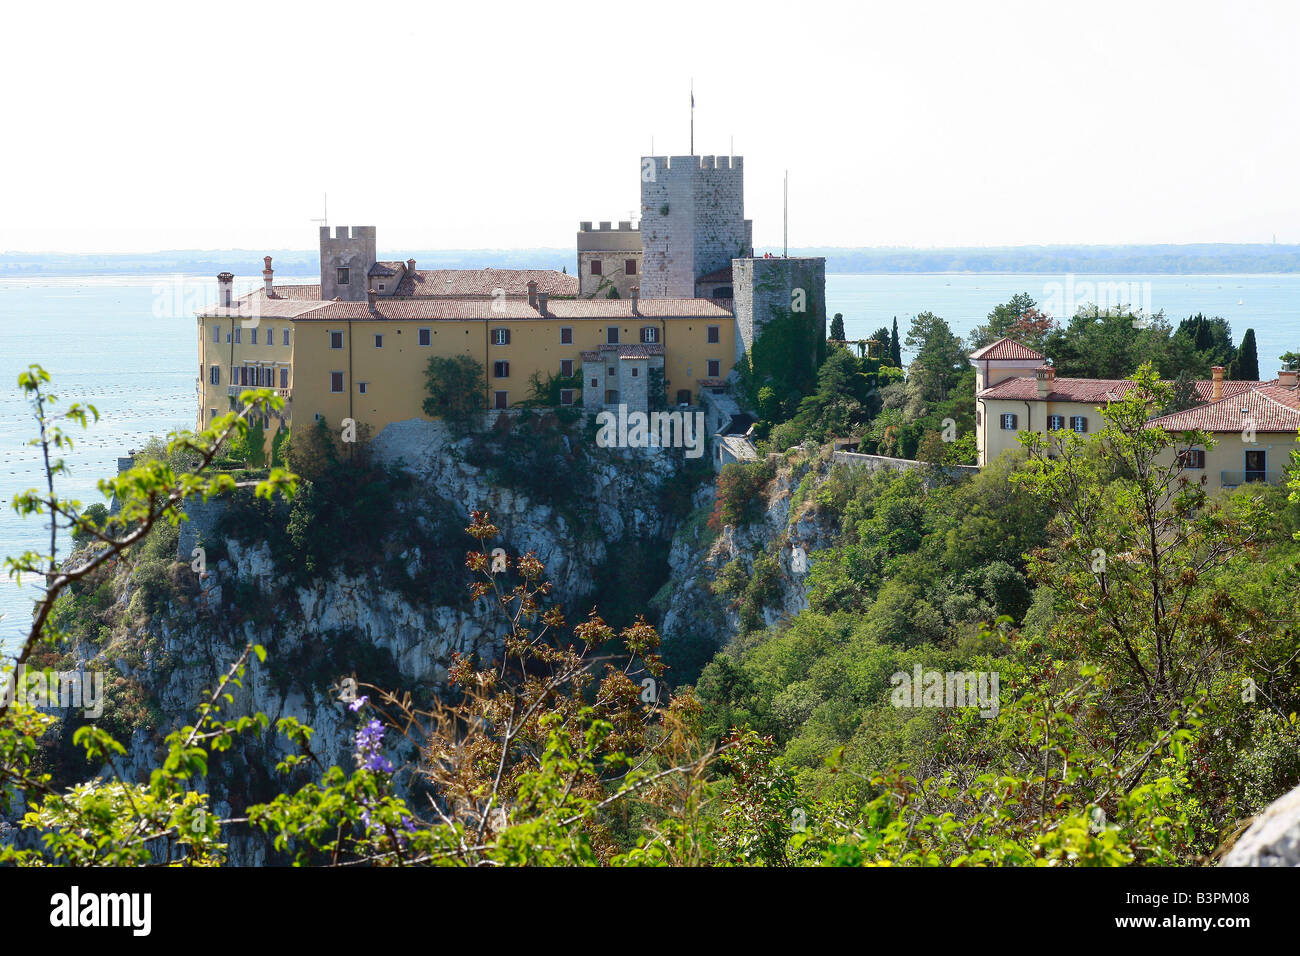 Landschaft mit Schloss von Duino, Duino-Aurisina, Friaul-Julisch Venetien, Italien Stockfoto